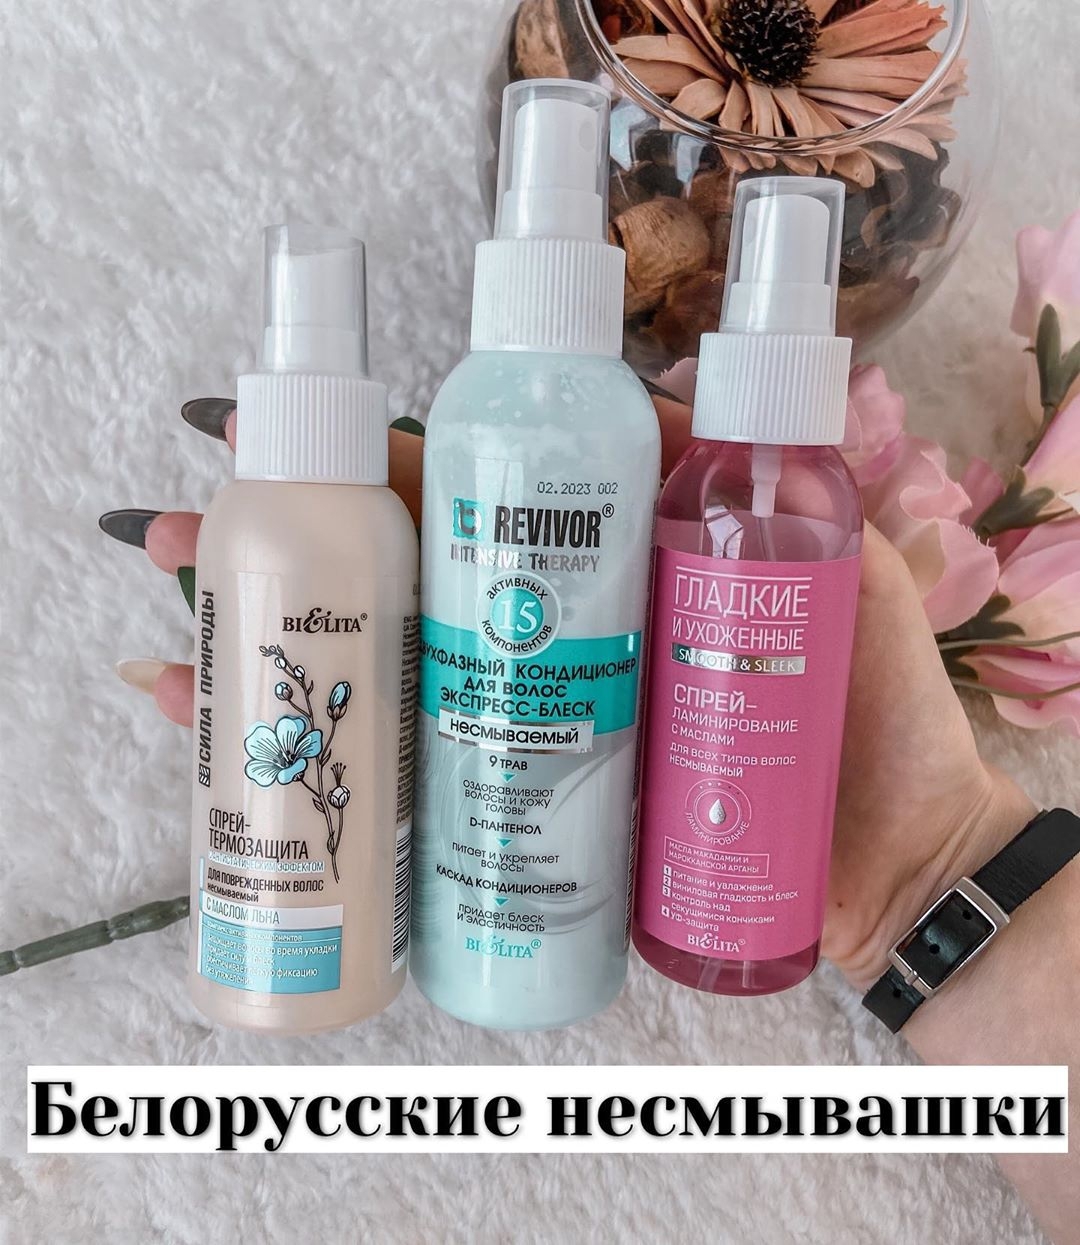 Популярная косметика и парфюм - Обзор на белорусские несмывашки для волос от @biblio.diva 🔥⠀
⠀
... отличный эффект за смешные деньги💫⠀
⠀
✅Двухфазный кондиционер для волос экспресс-блеск серии Revivor....